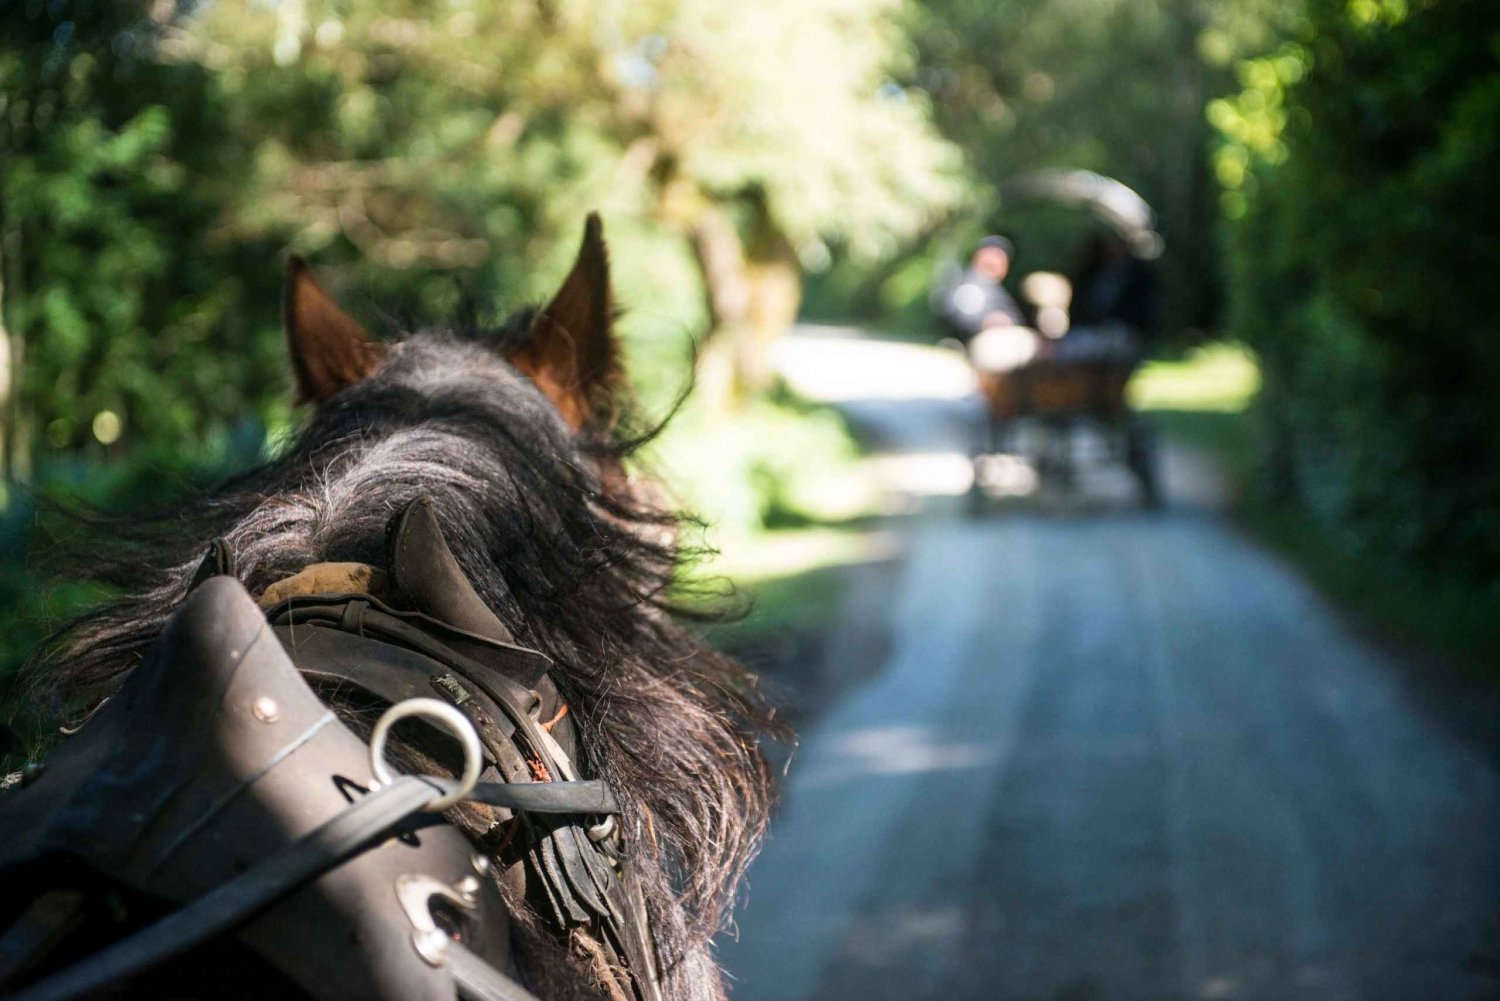 Killarney til hest og vogn: 1 times kør-selv-tur